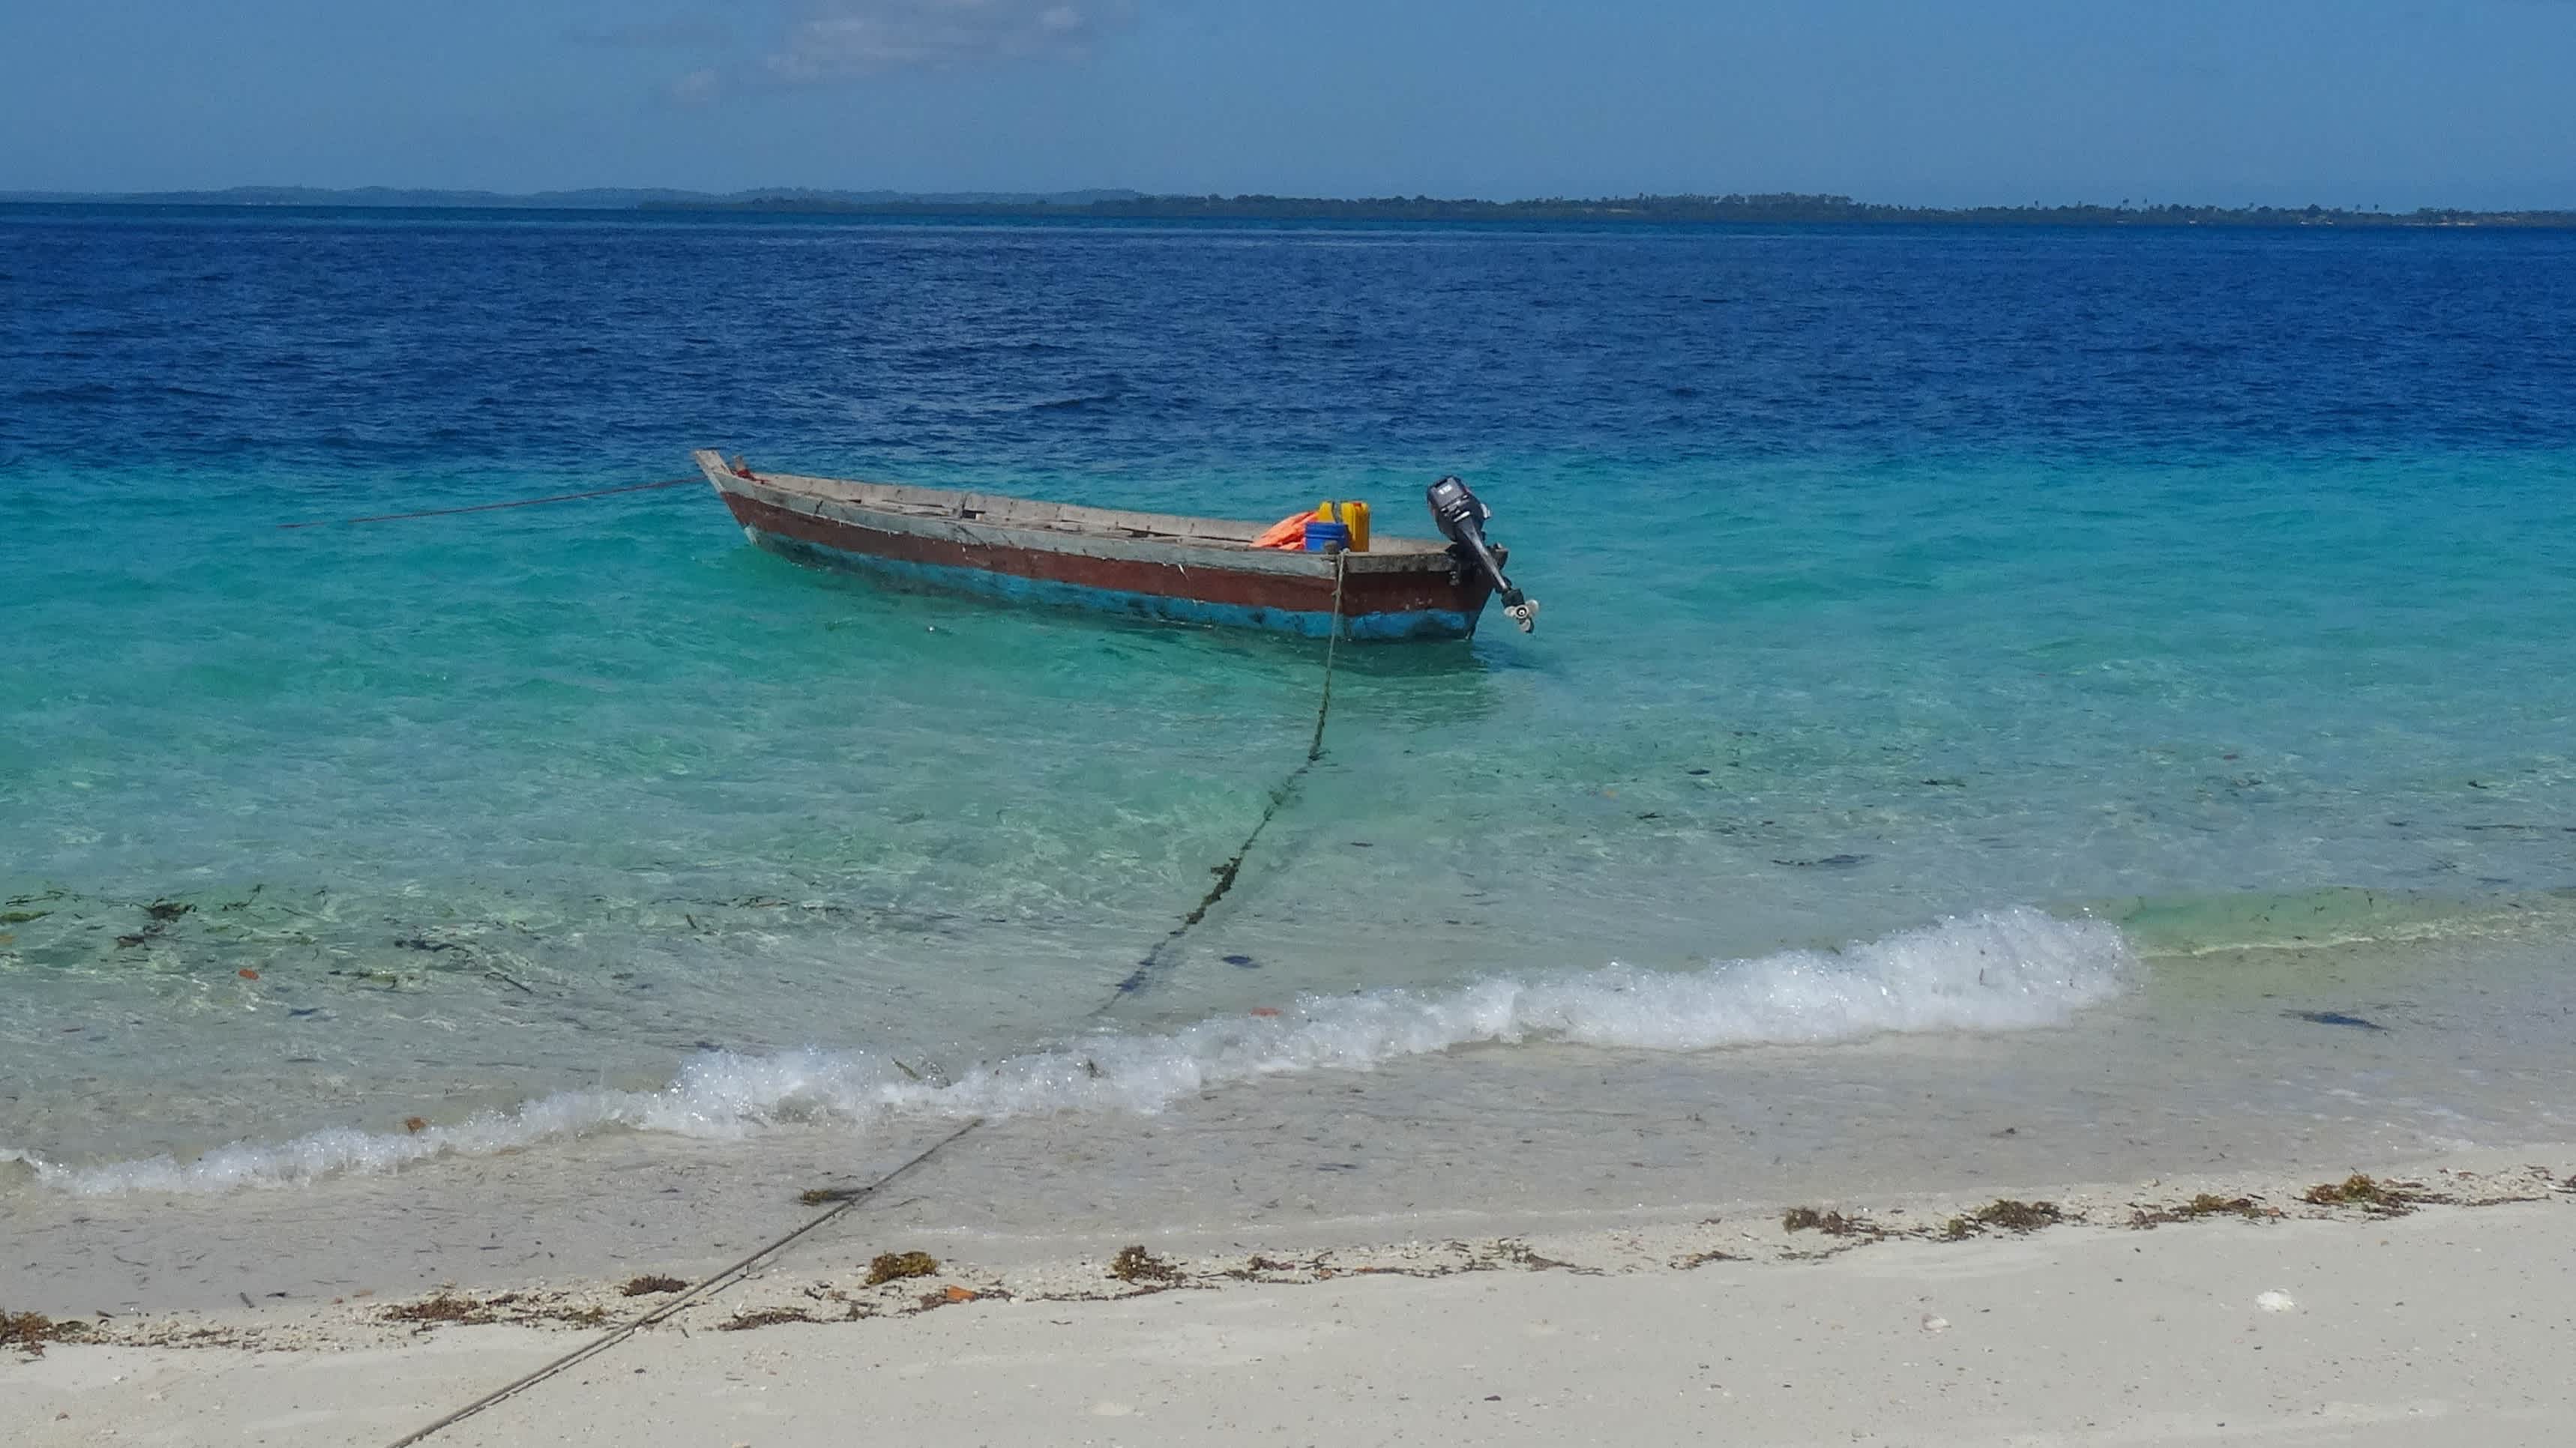 Ein traditionelles Holzboot ankert im kristallklaren Wasser und bei Sonnenschein vor der Insel Misali, Tansania.
